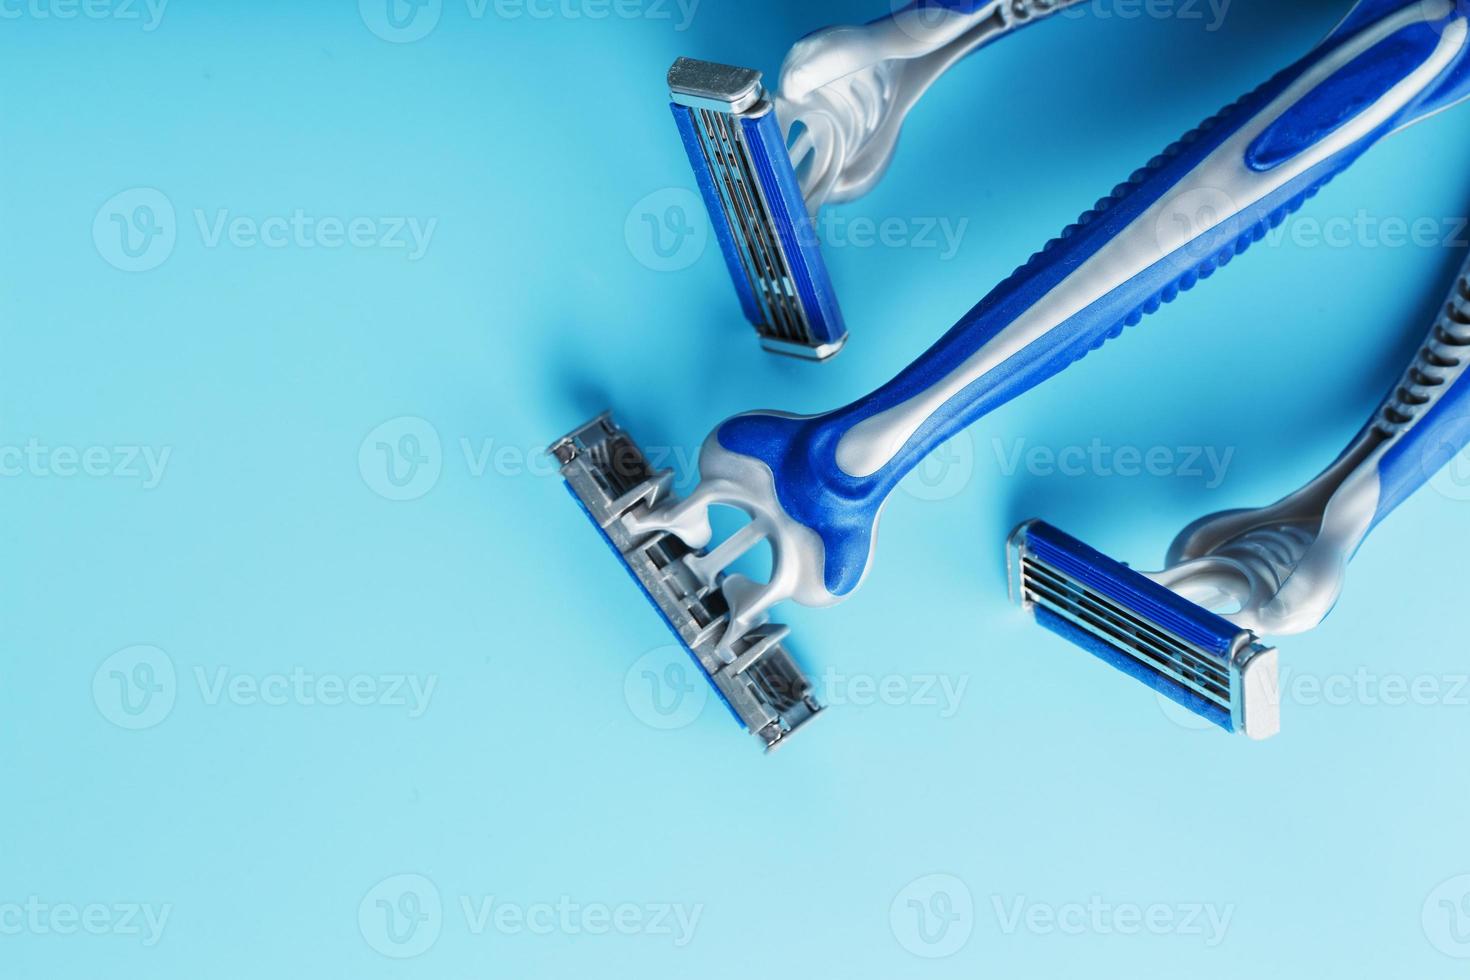 máquinas de afeitar azules en una fila sobre un fondo azul con cubitos de hielo foto